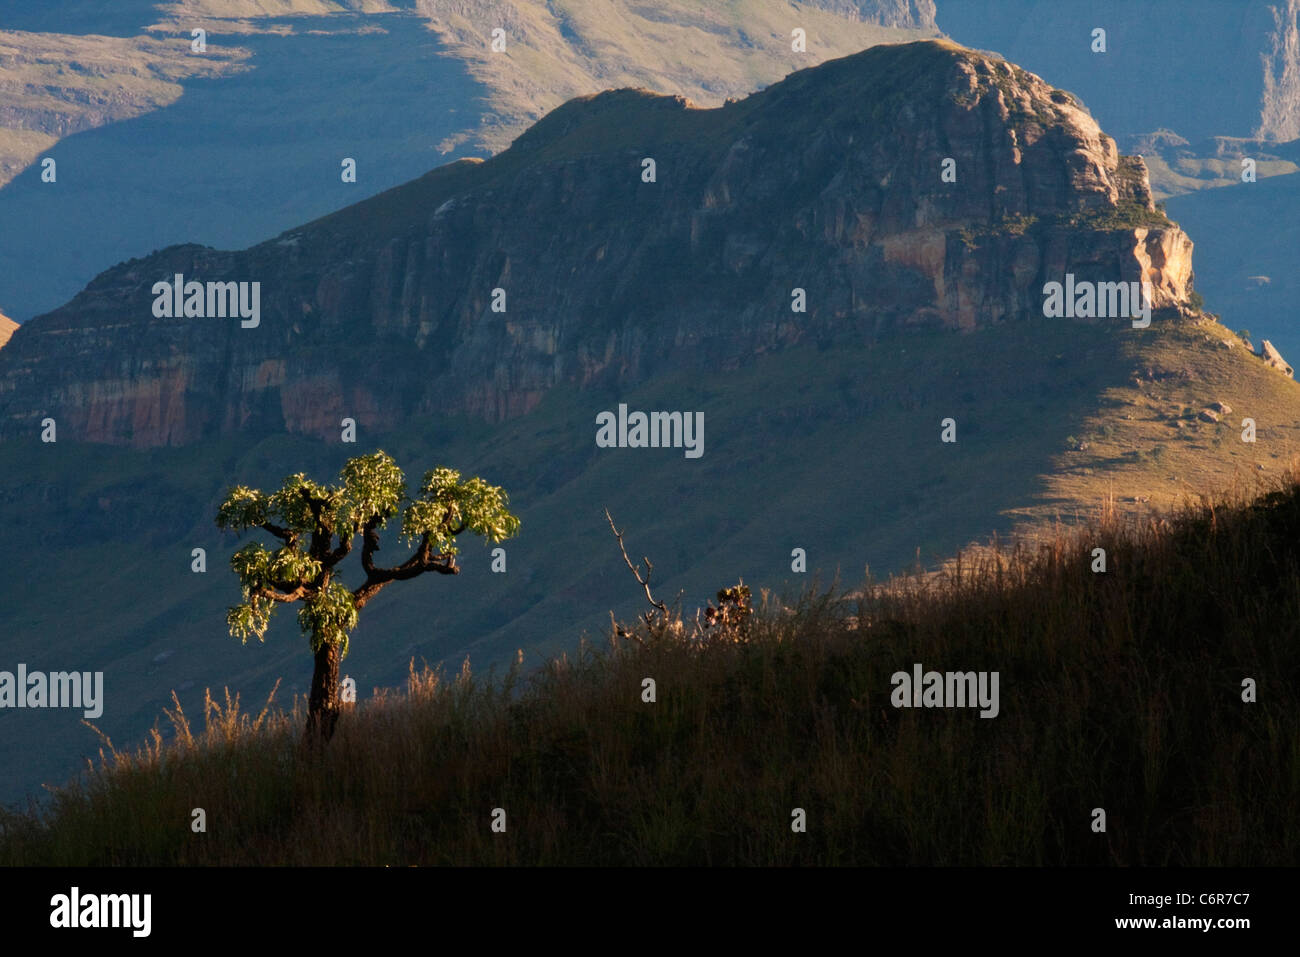 Natal Drakensberge Landschaft mit einem einsamen Kohl Baum auf einem grasbewachsenen Hang gesehen vor dem Hintergrund der Berge und Klippen Stockfoto